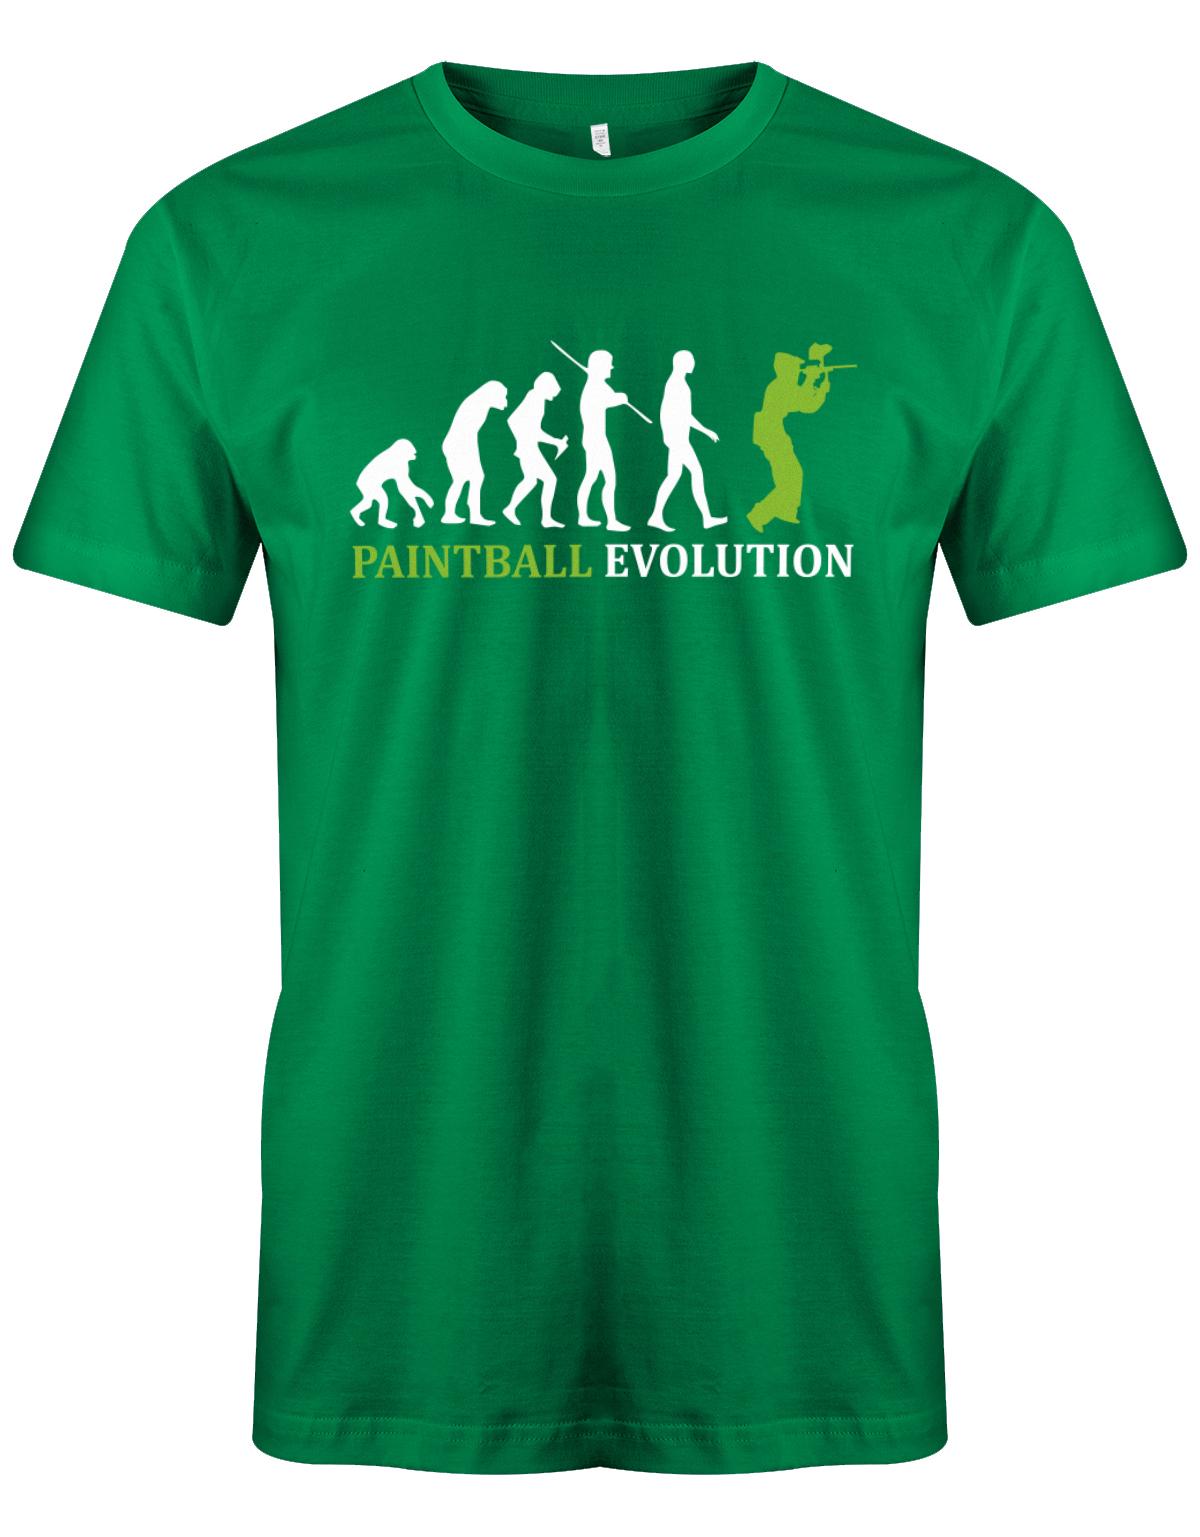 Paintball-Evolution-Herren-Shirt-Gr-n